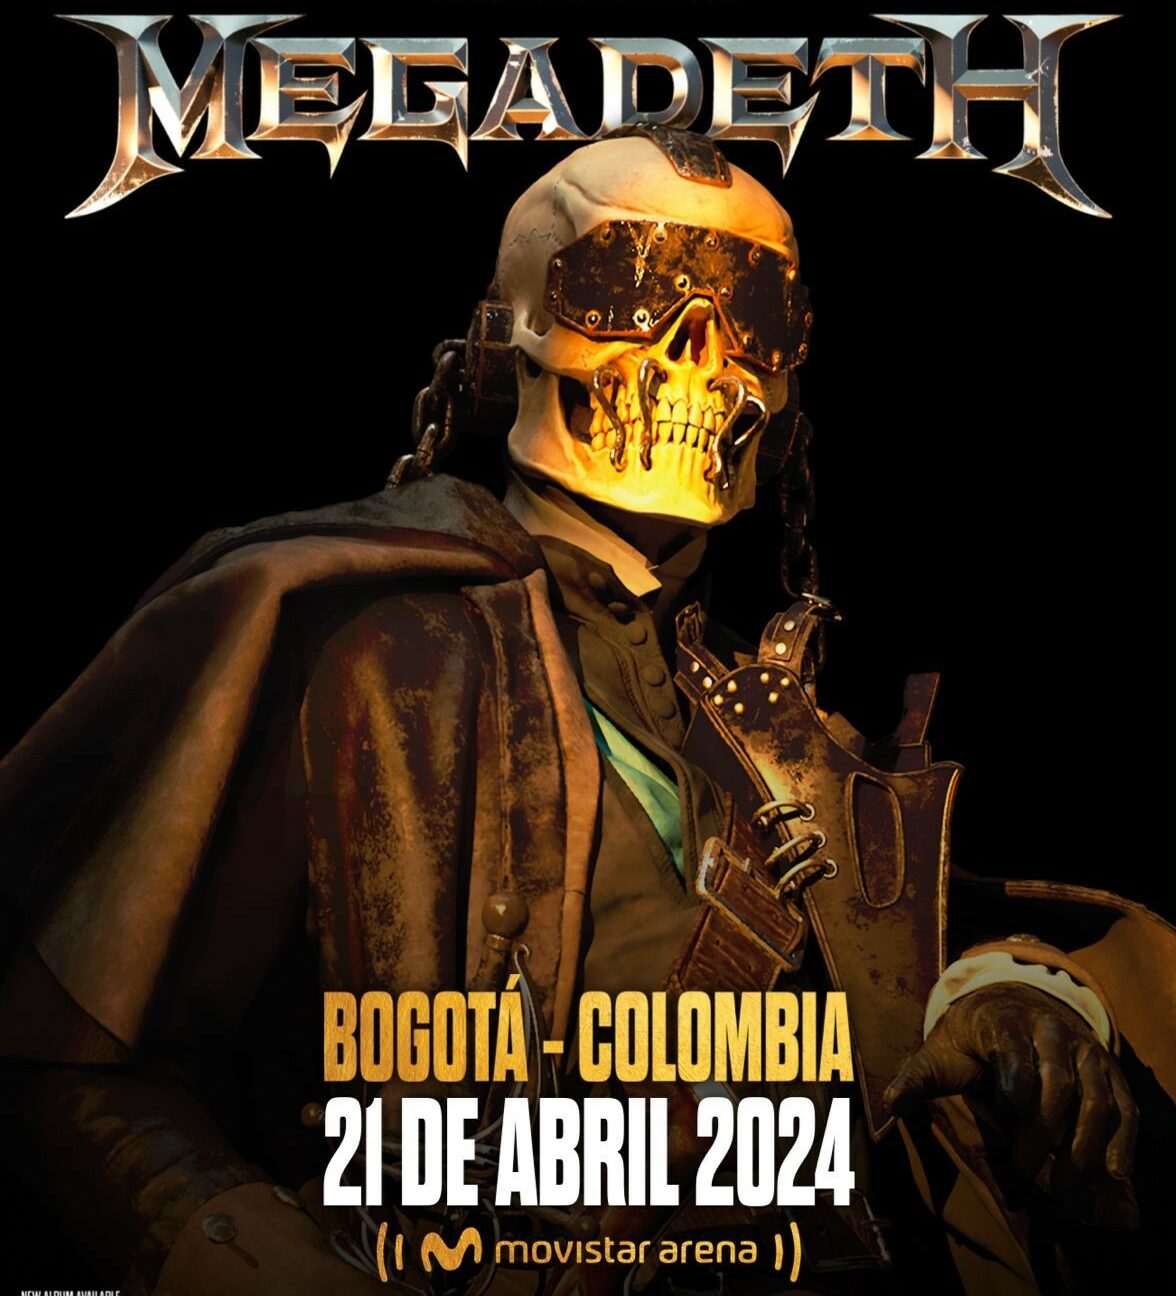 Megadeth en concierto: 10 años después vuelven a Colombia para un show histórico en el Movistar Arena